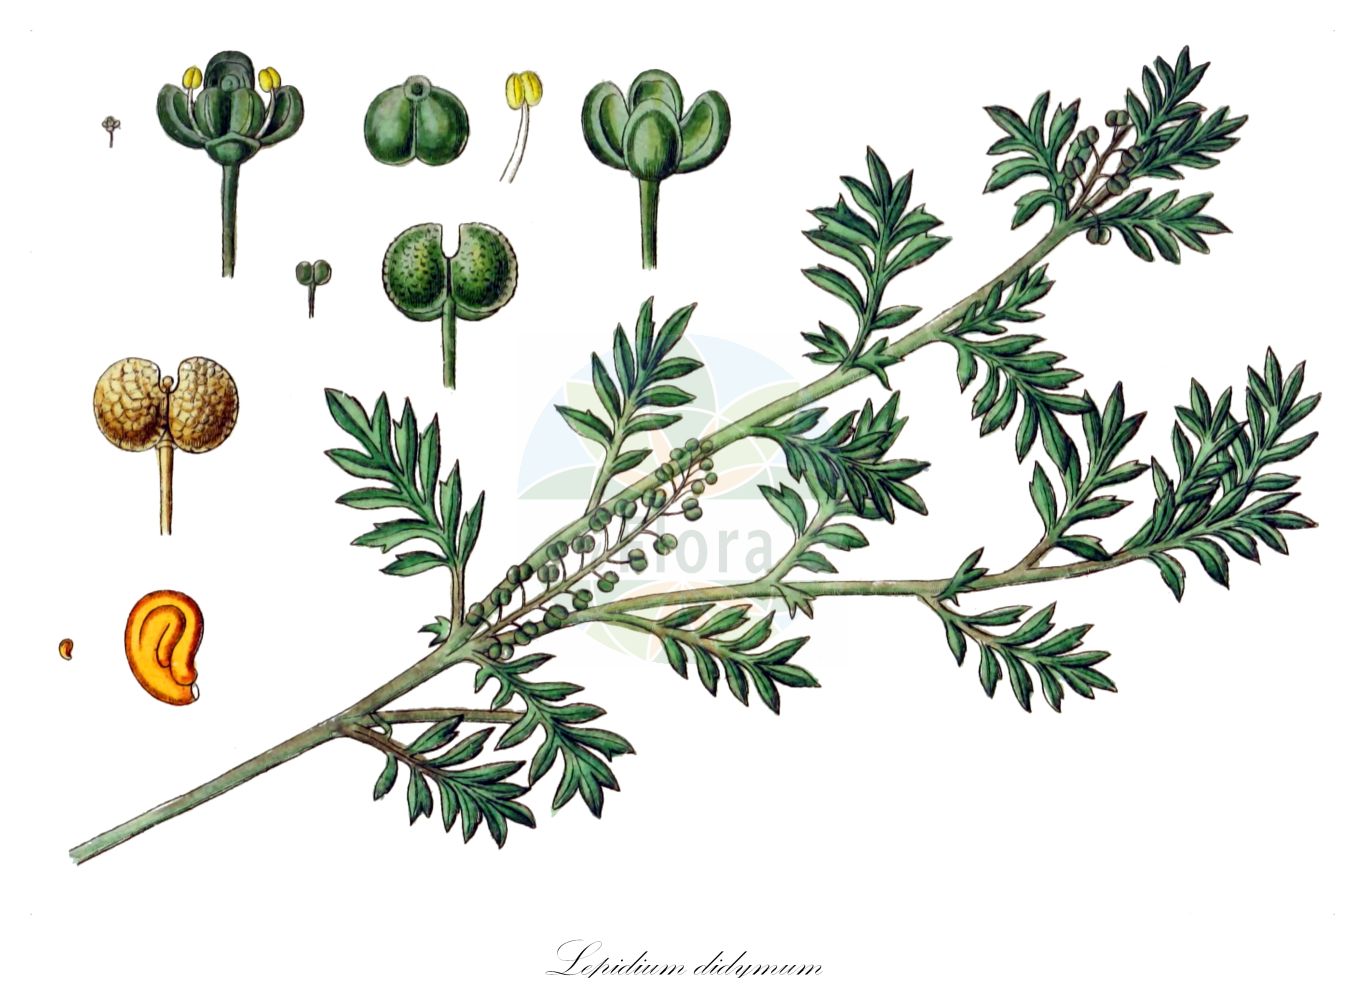 Historische Abbildung von Lepidium didymum (Zweiknotiger Krähenfuß - Lesser Swine-cress). Das Bild zeigt Blatt, Bluete, Frucht und Same. ---- Historical Drawing of Lepidium didymum (Zweiknotiger Krähenfuß - Lesser Swine-cress). The image is showing leaf, flower, fruit and seed.(Lepidium didymum,Zweiknotiger Krähenfuß,Lesser Swine-cress,Coronopus didymus,Coronopus pinnatifida,Lepidium didymum,Senebiera didyma,Senebiera didymus,Senebiera pinnatifida,Zweiknotiger Kraehenfuss,Lesser Swine-cress,Slender Wartcress,Twincress,Lepidium,Kresse,Pepperweed,Brassicaceae,Kreuzblütler,Cabbage family,Blatt,Bluete,Frucht,Same,leaf,flower,fruit,seed,Sturm (1796f))